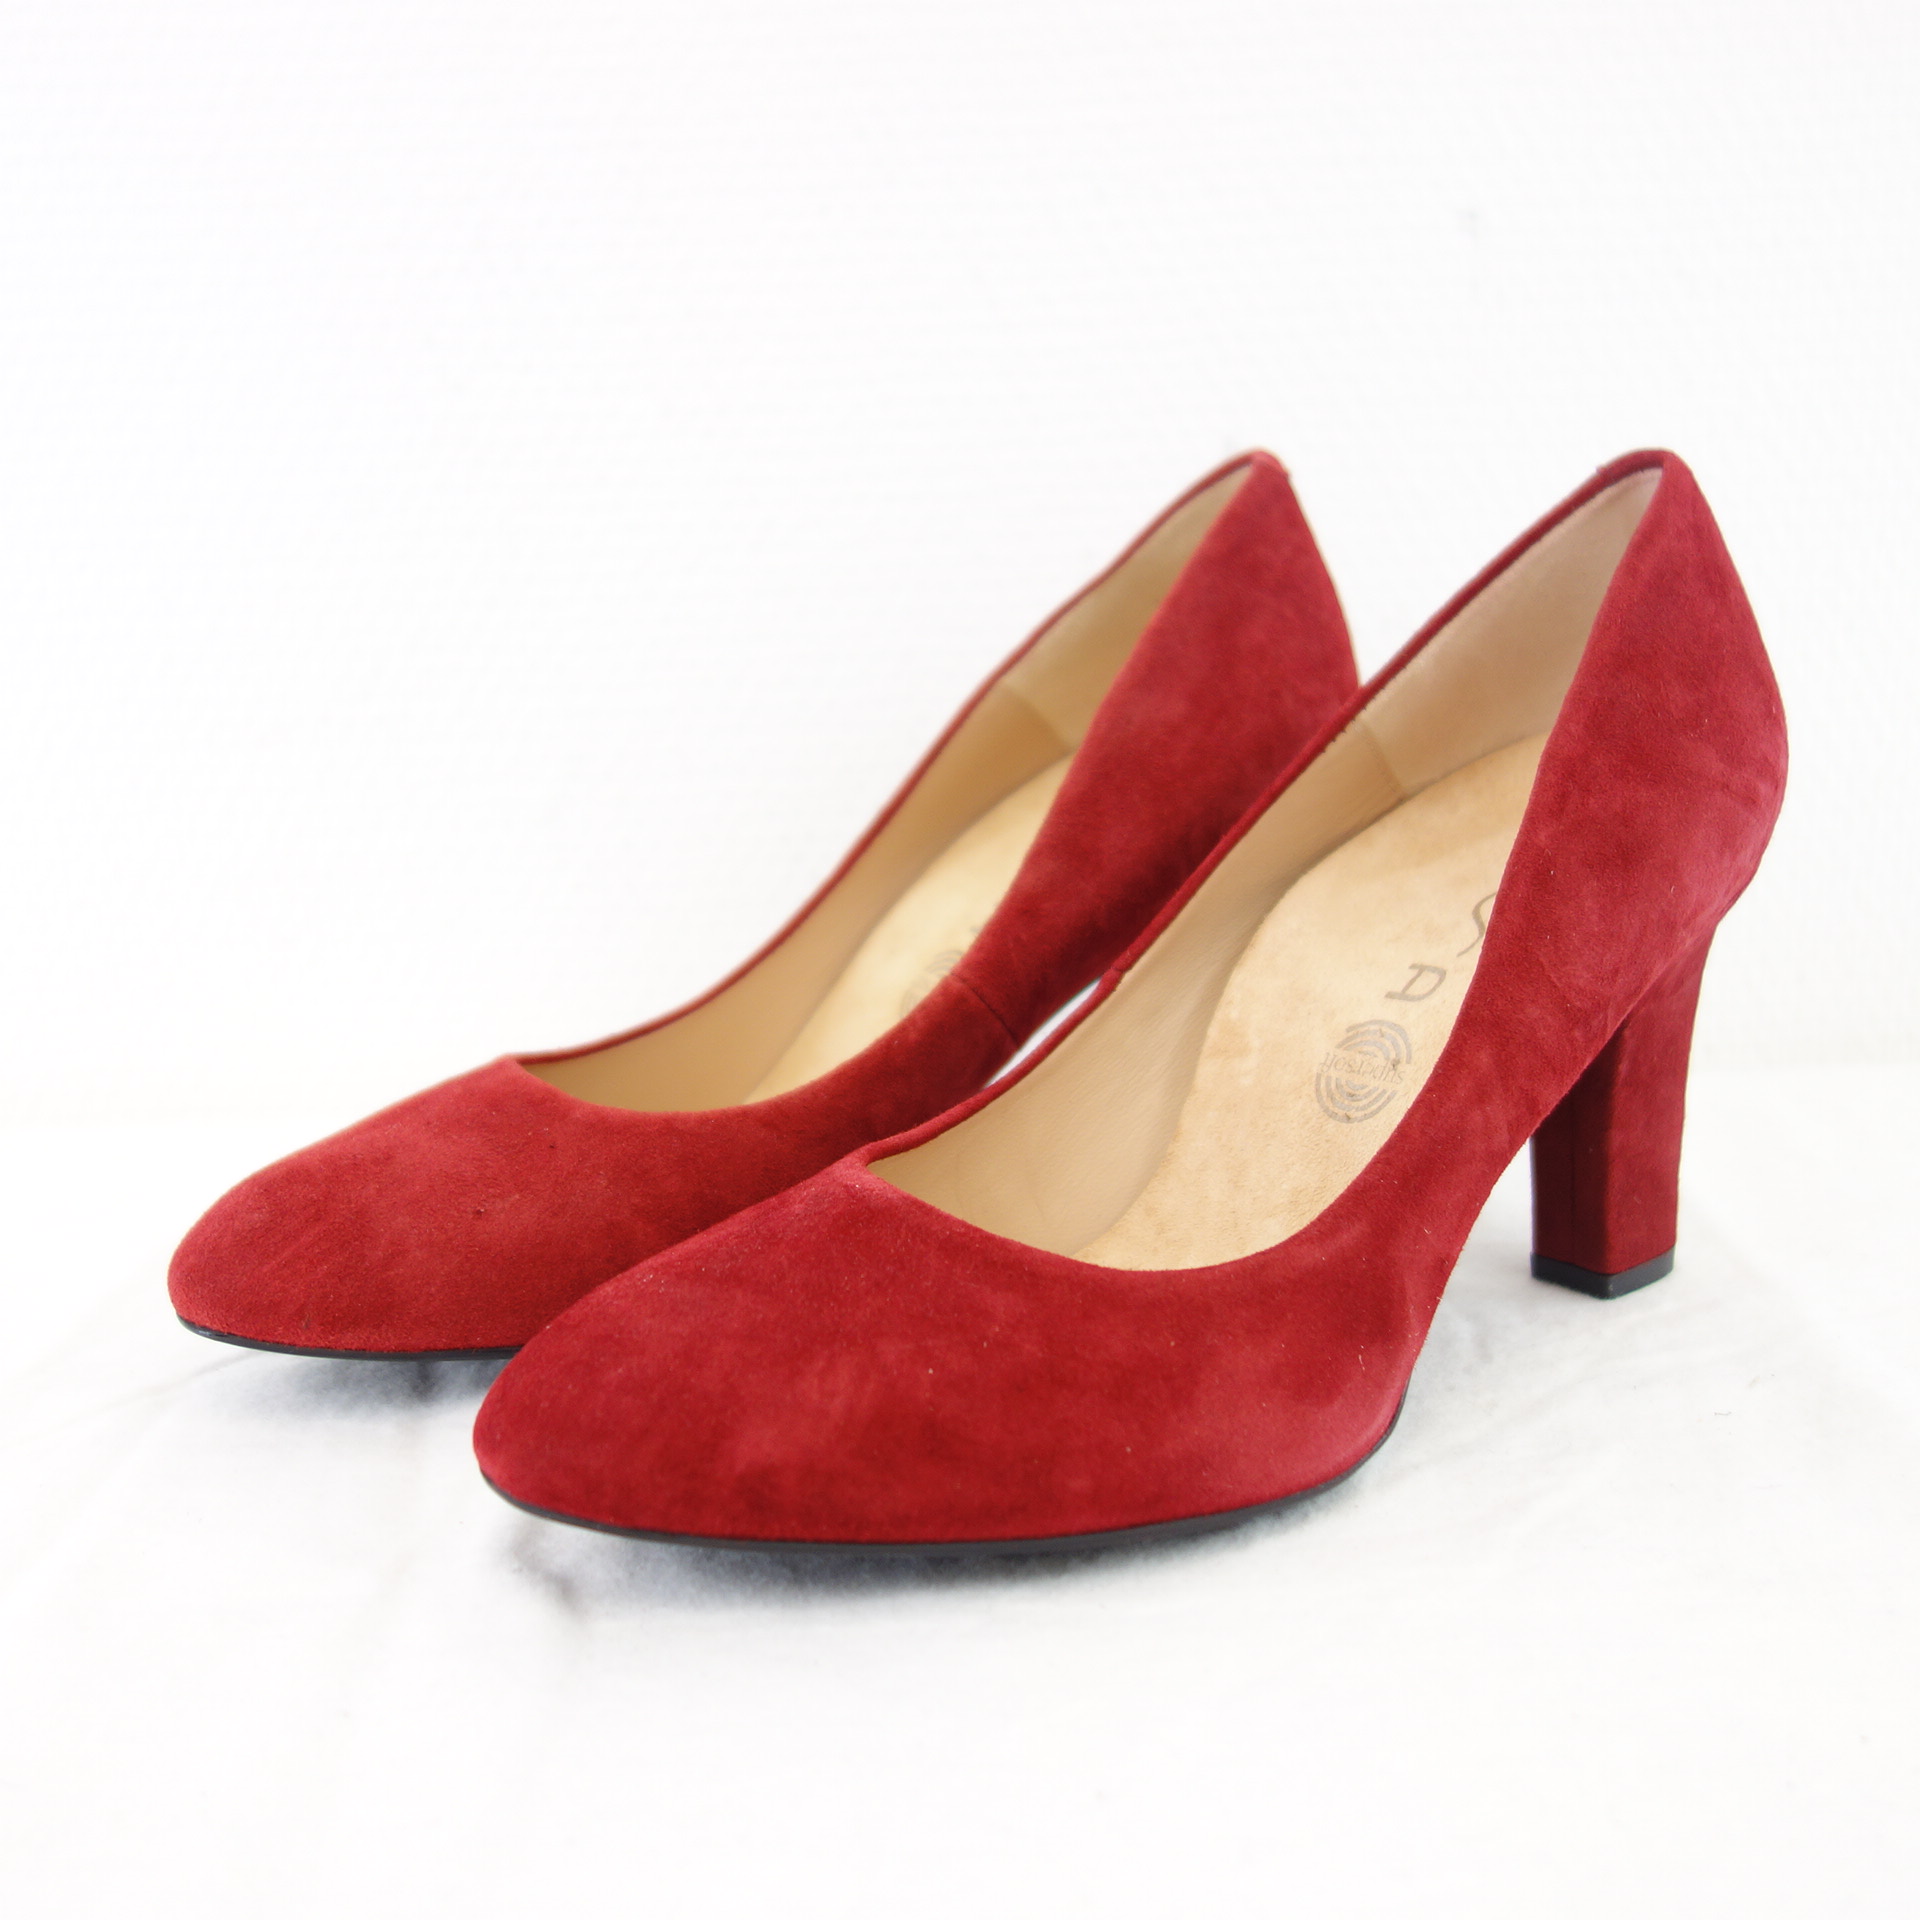 UNISA Bequeme Damen Schuhe Pumps Rot Wildleder Modell Umis Blockabsatz